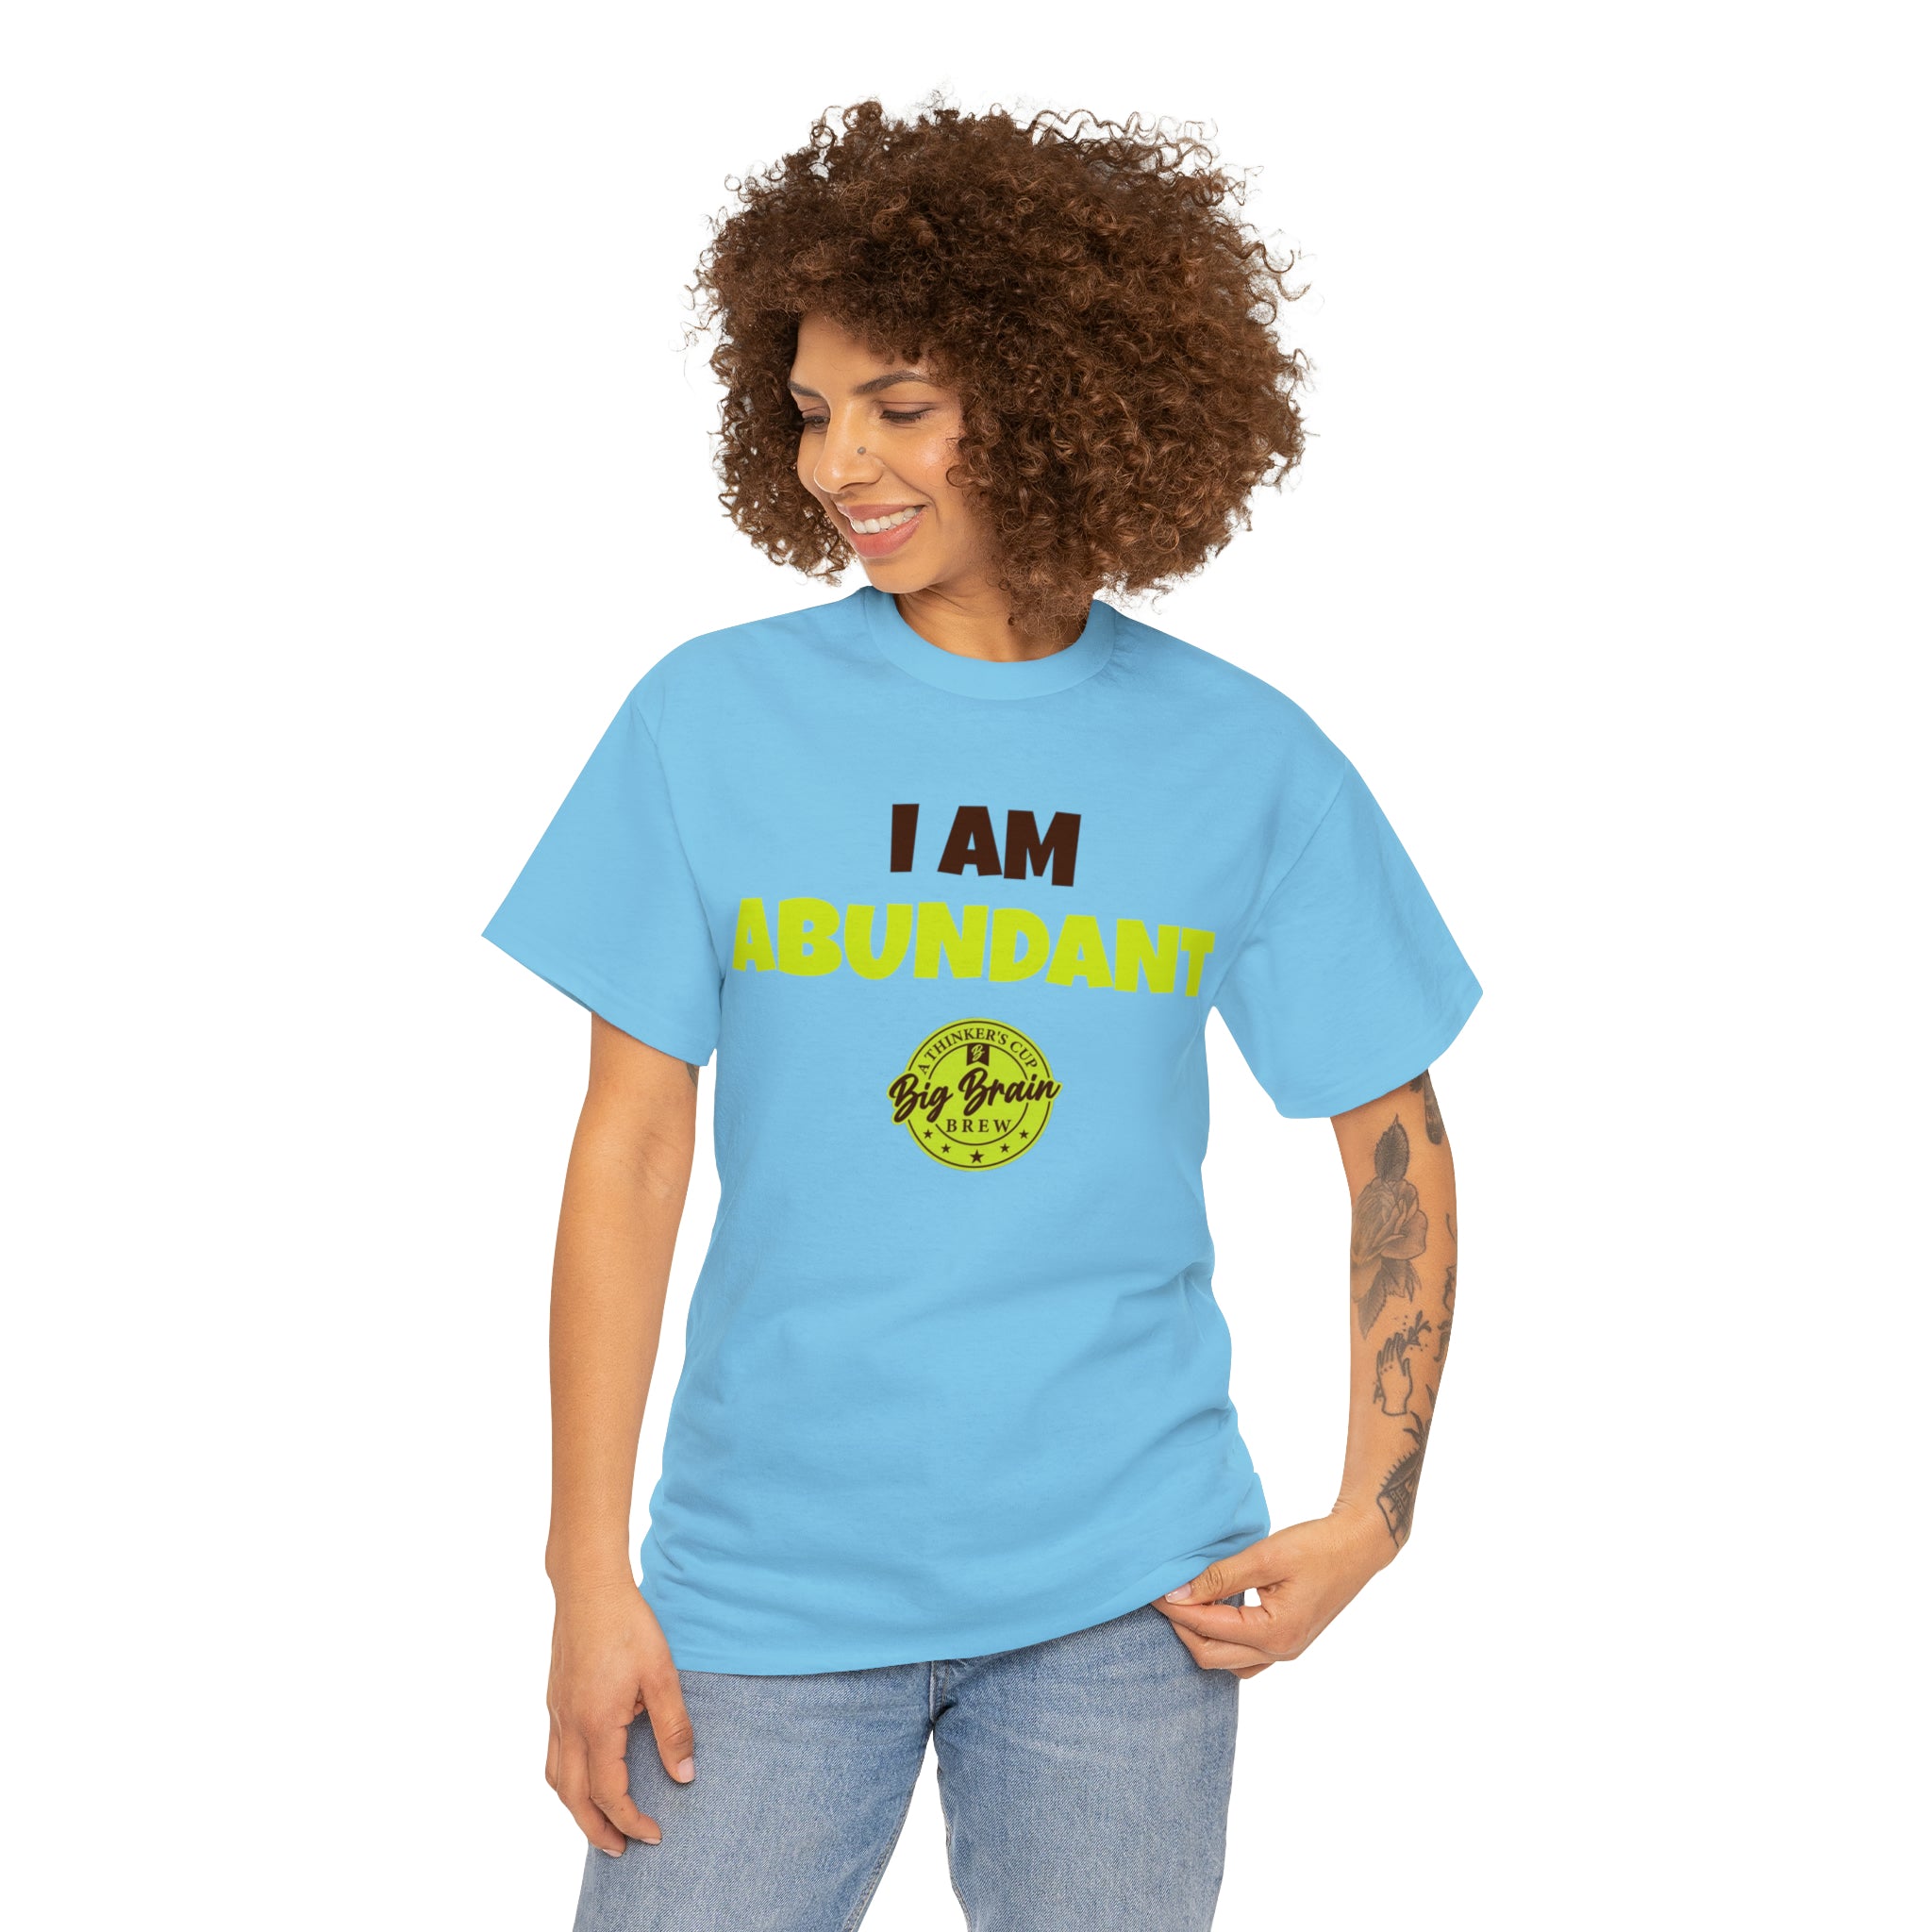 I Am Abundant T-Shirt Designed by Big Brain Brew